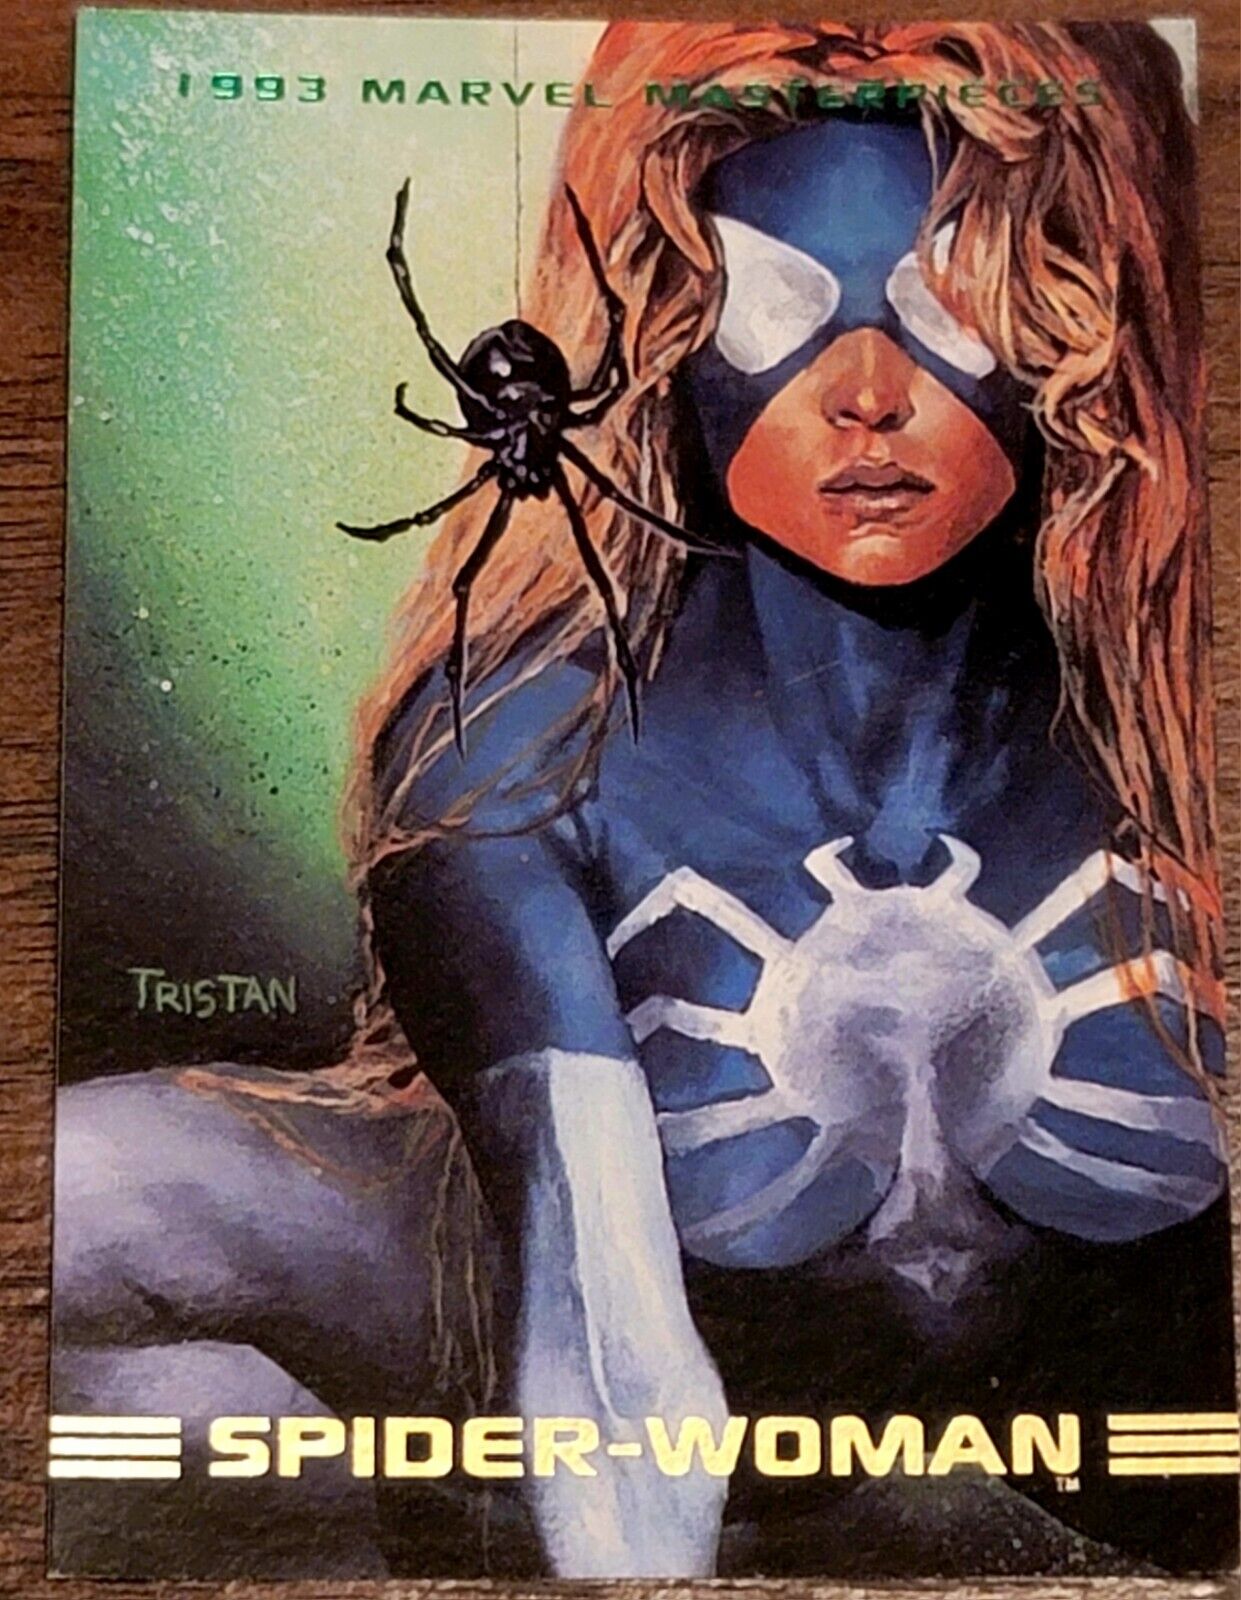 SPIDER-WOMAN 1993 Marvel Masterpieces card #33 Tristan Schane art 